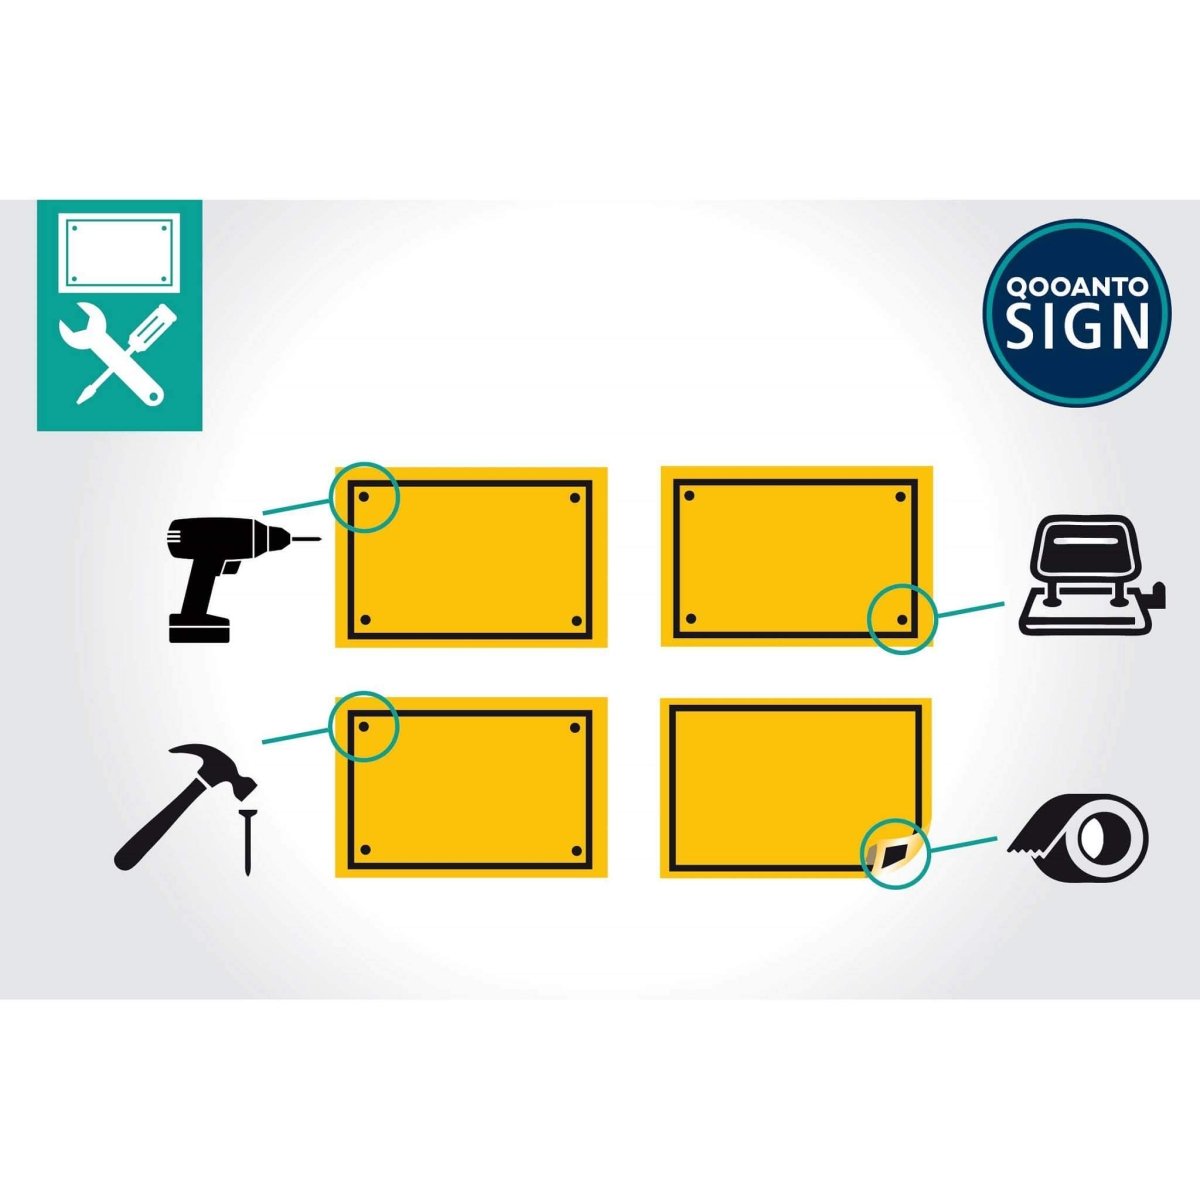 Privatgelände Parkieren Verboten Schild aus Alu-Verbund mit UV-Schutz - QOOANTO-SIGN